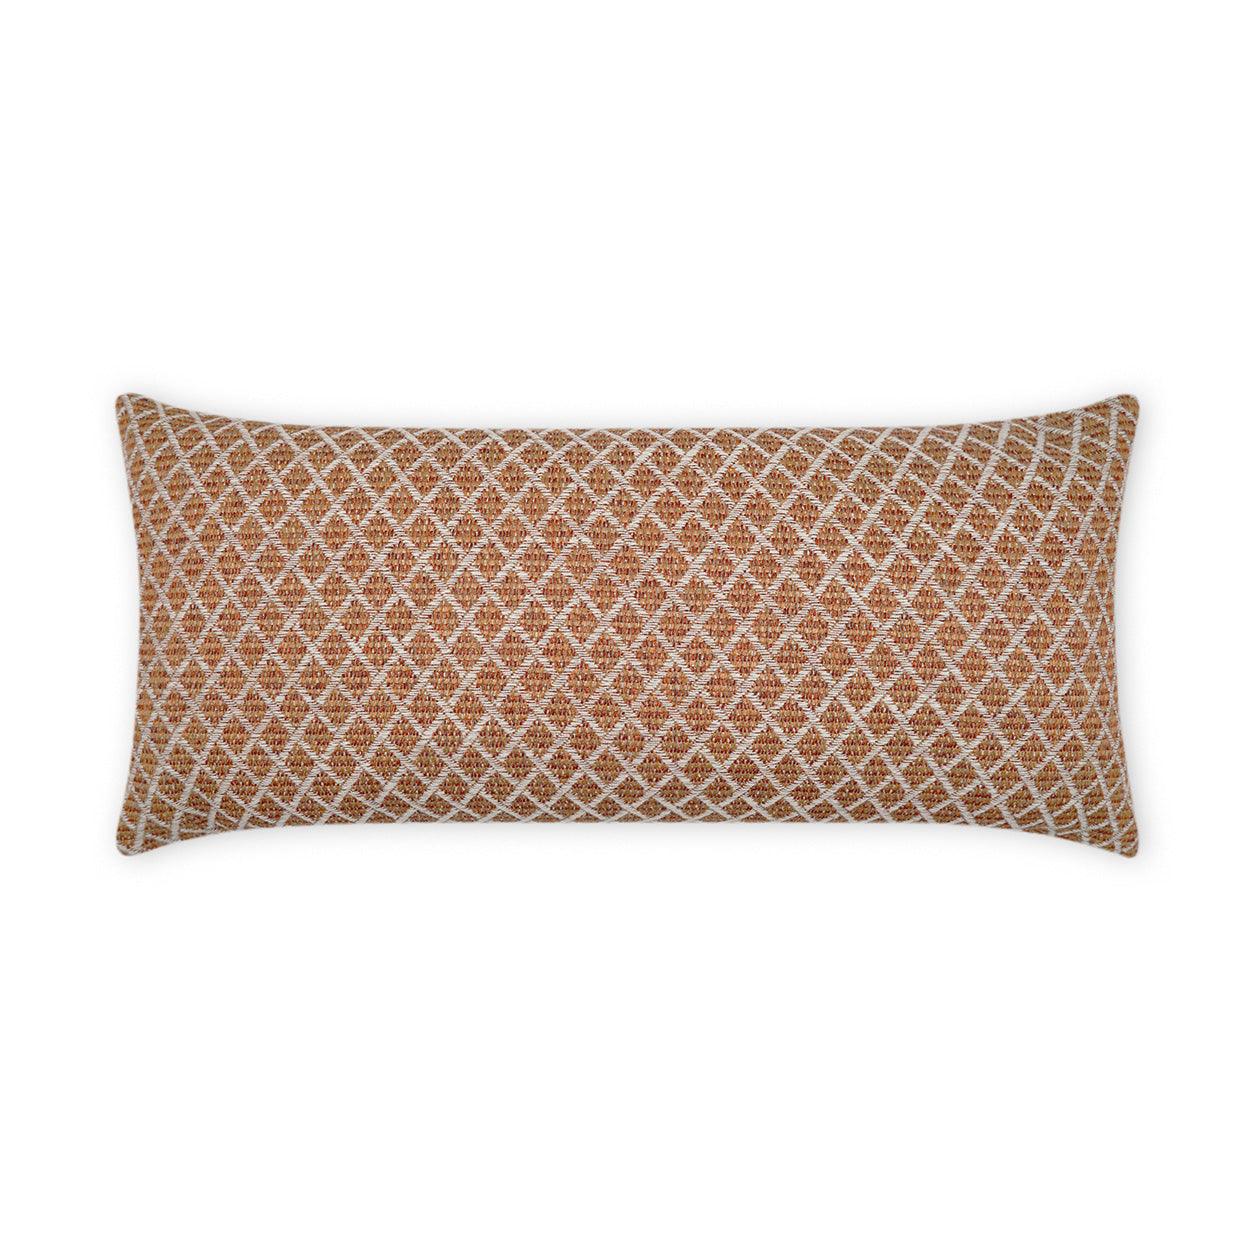 LOOMLAN Outdoor - Outdoor Ambree Lumbar Pillow - Adobe - Outdoor Pillows